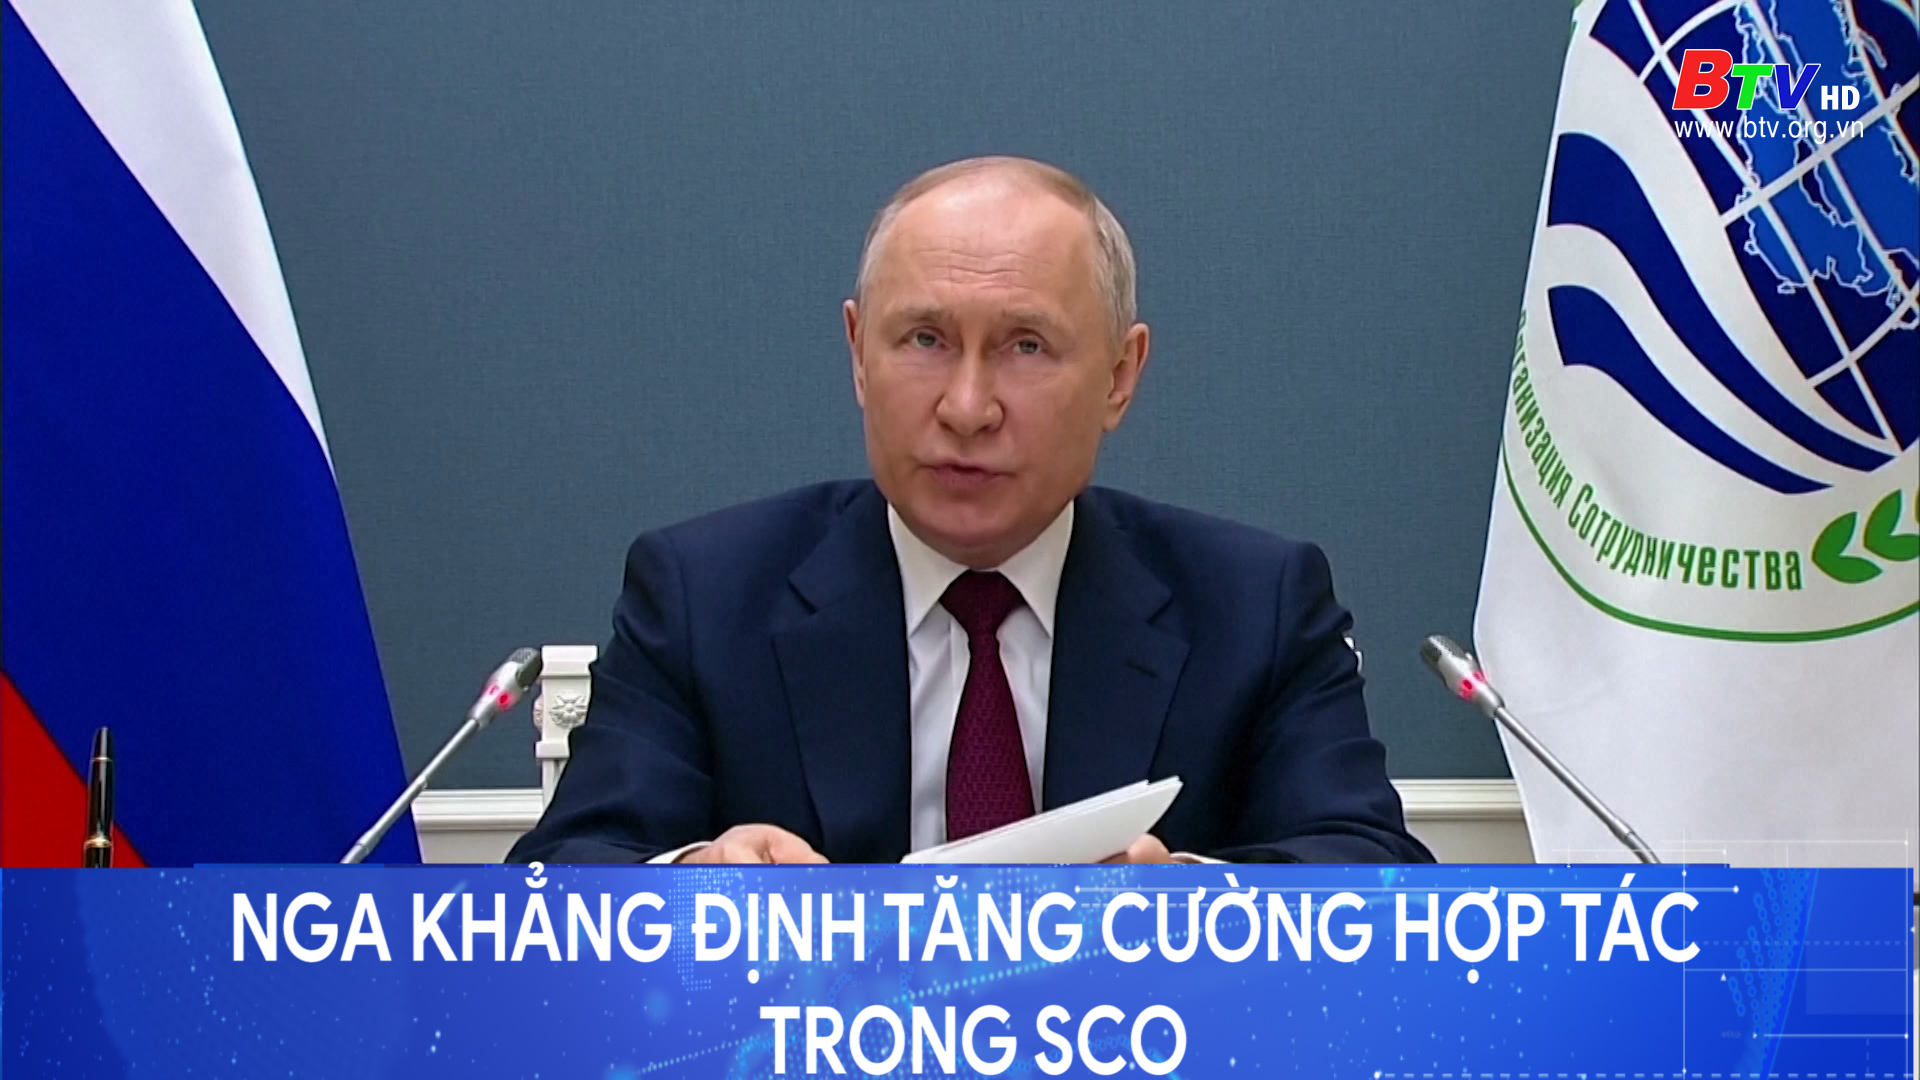 Nga khẳng định tăng cường hợp tác trong Hội nghị thượng đỉnh tổ chức Hợp tác Thượng Hải	